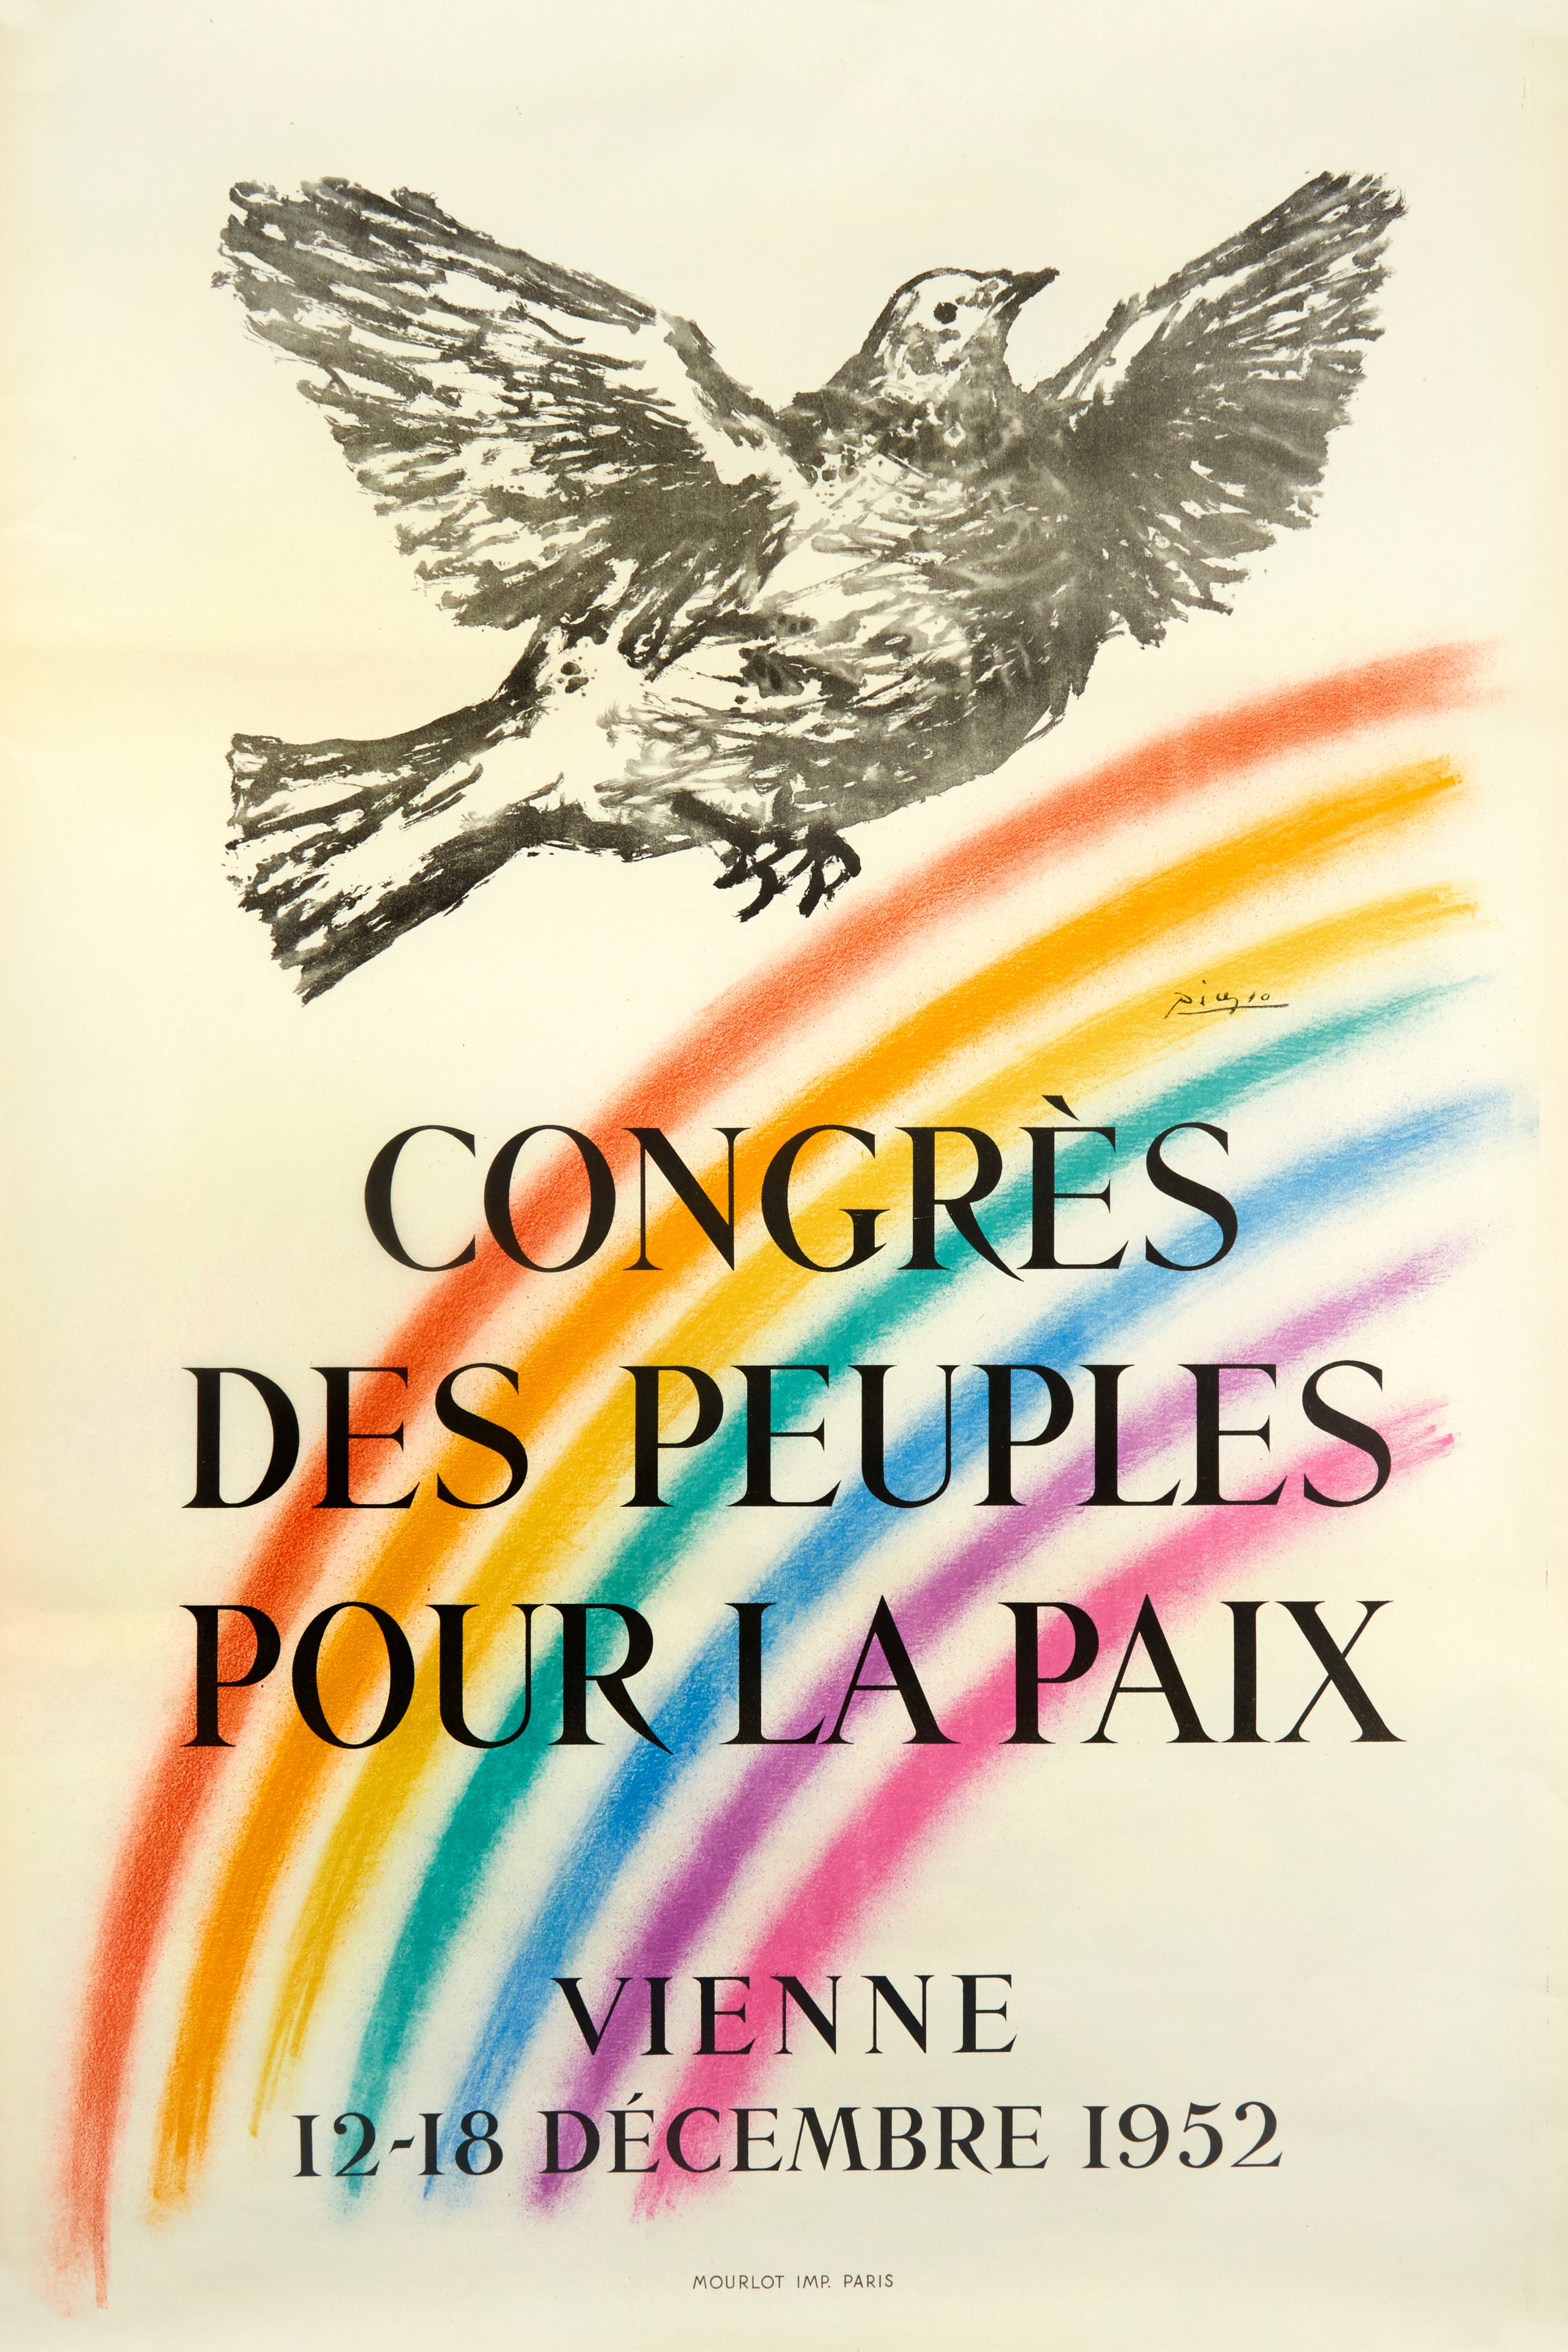 Congress des peuples pour la Paix - Vienne (after) Pablo Picasso